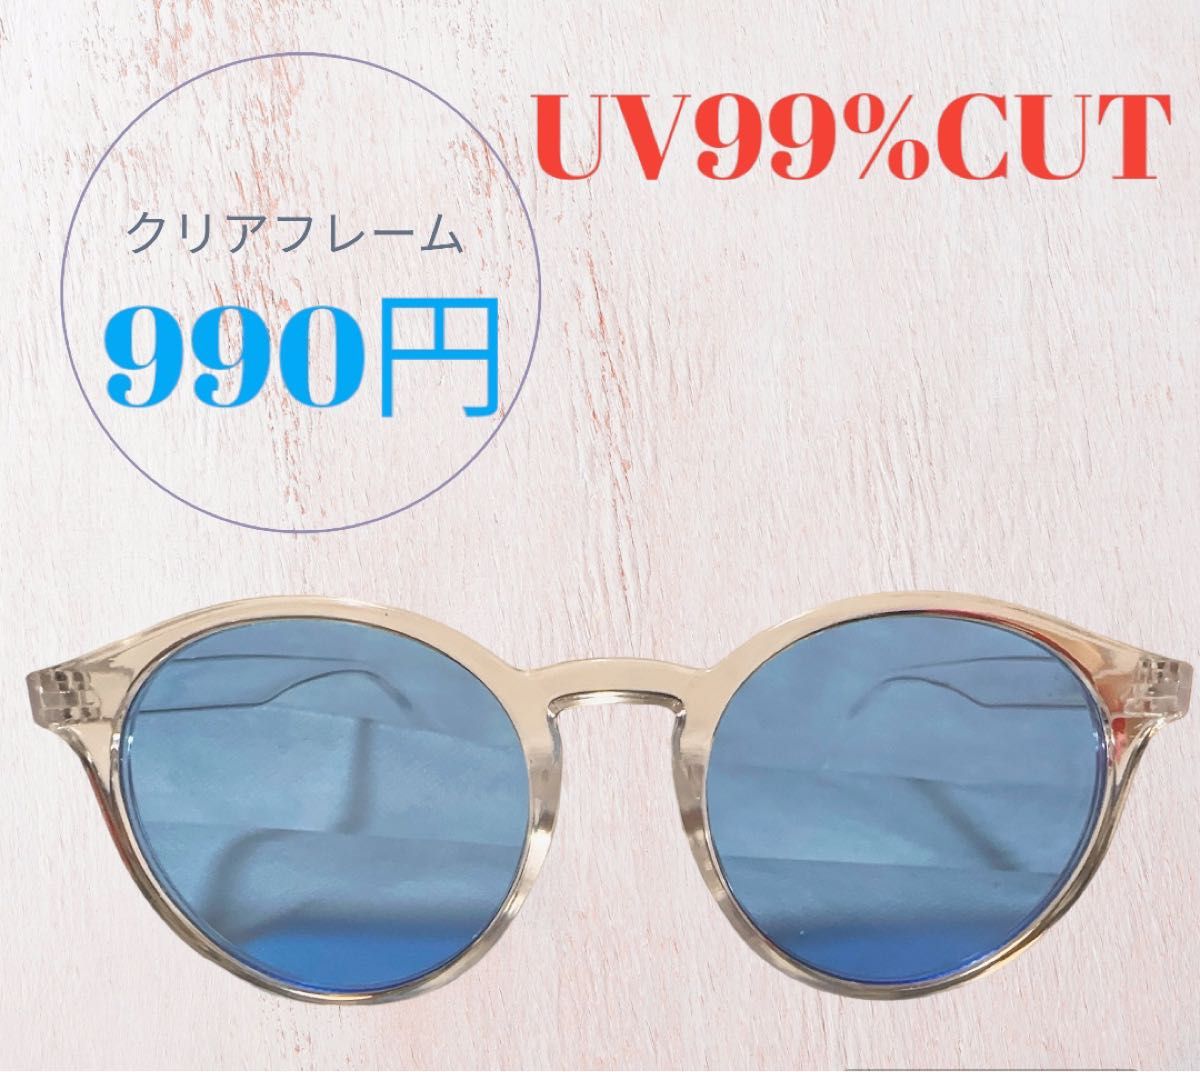 サングラス 眼鏡 メガネ 日差し避け 韓国 紫外線カットUV99%CUT ブラウン クリアカラー ブルー